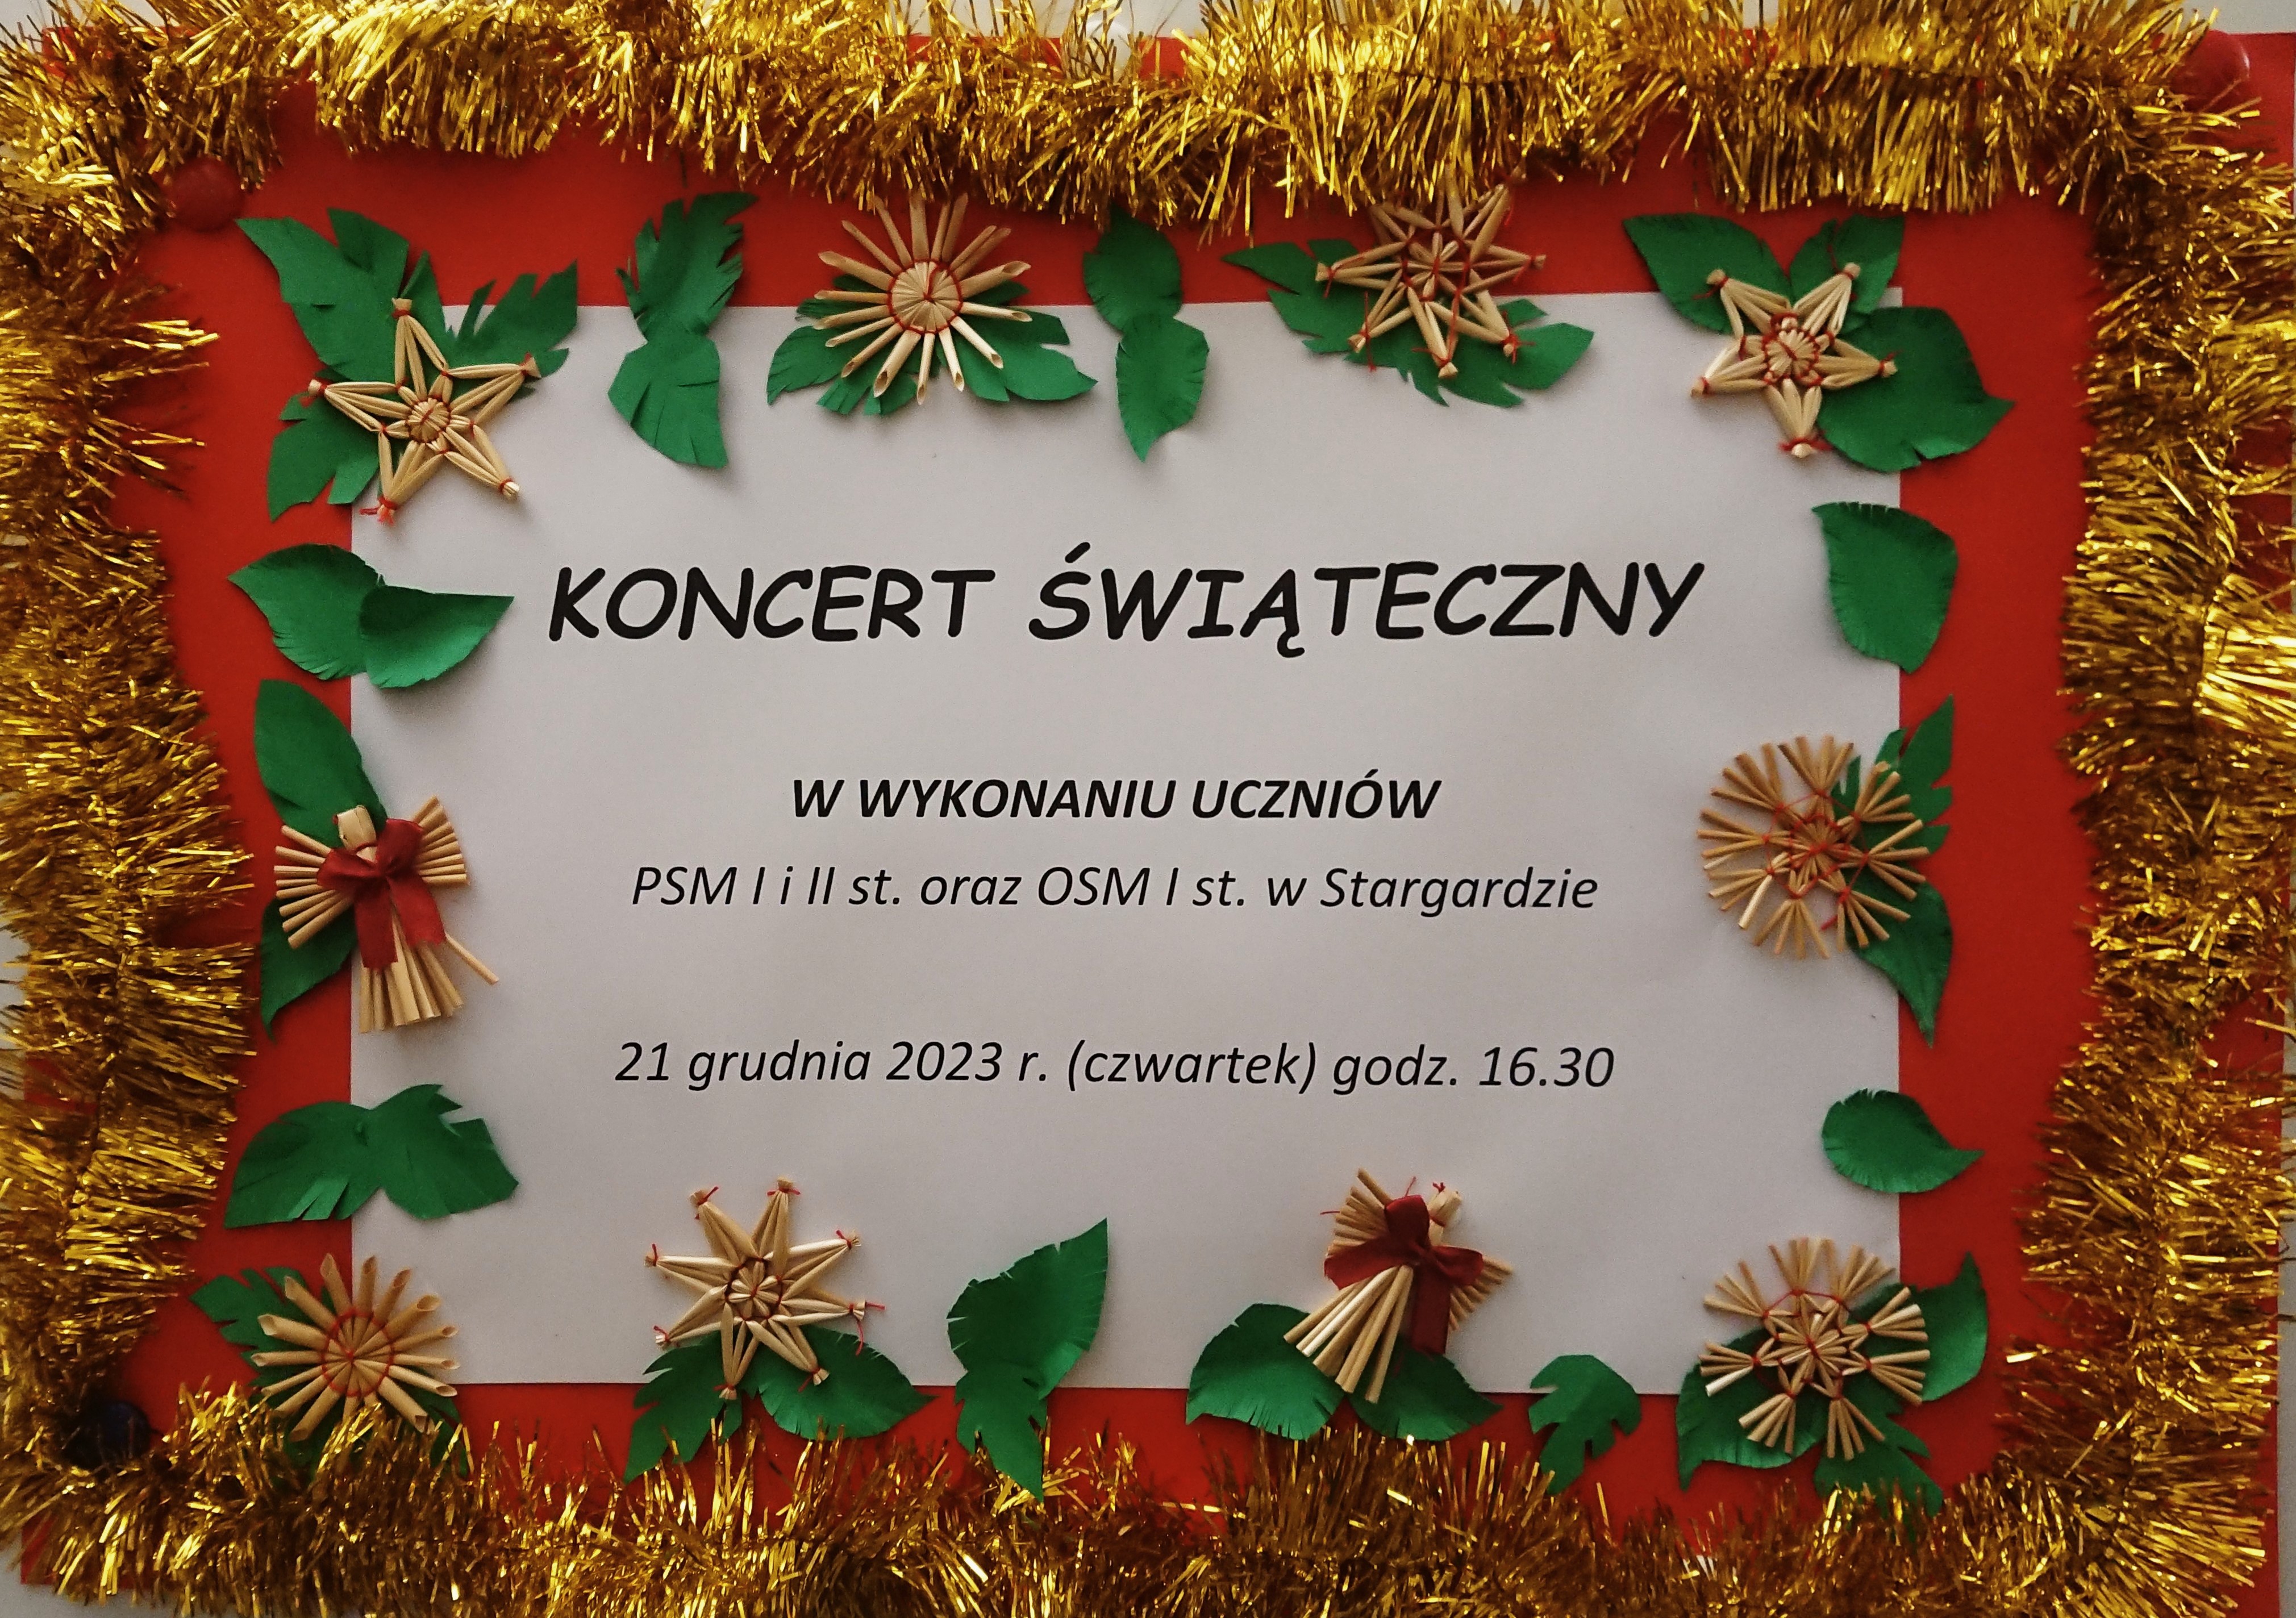 Plakat informujący o koncercie świątecznym w wykonaniu uczniów PSM I i II stopnia im. Witolda Lutosławskiego oraz OSM I stopnia w Stargardzie 21 grudnia 2023 o godzinie 16.30. Plakat ozdobiony jest słomkowymi gwiazdkami, aniołkami i zielonymi listkami. 